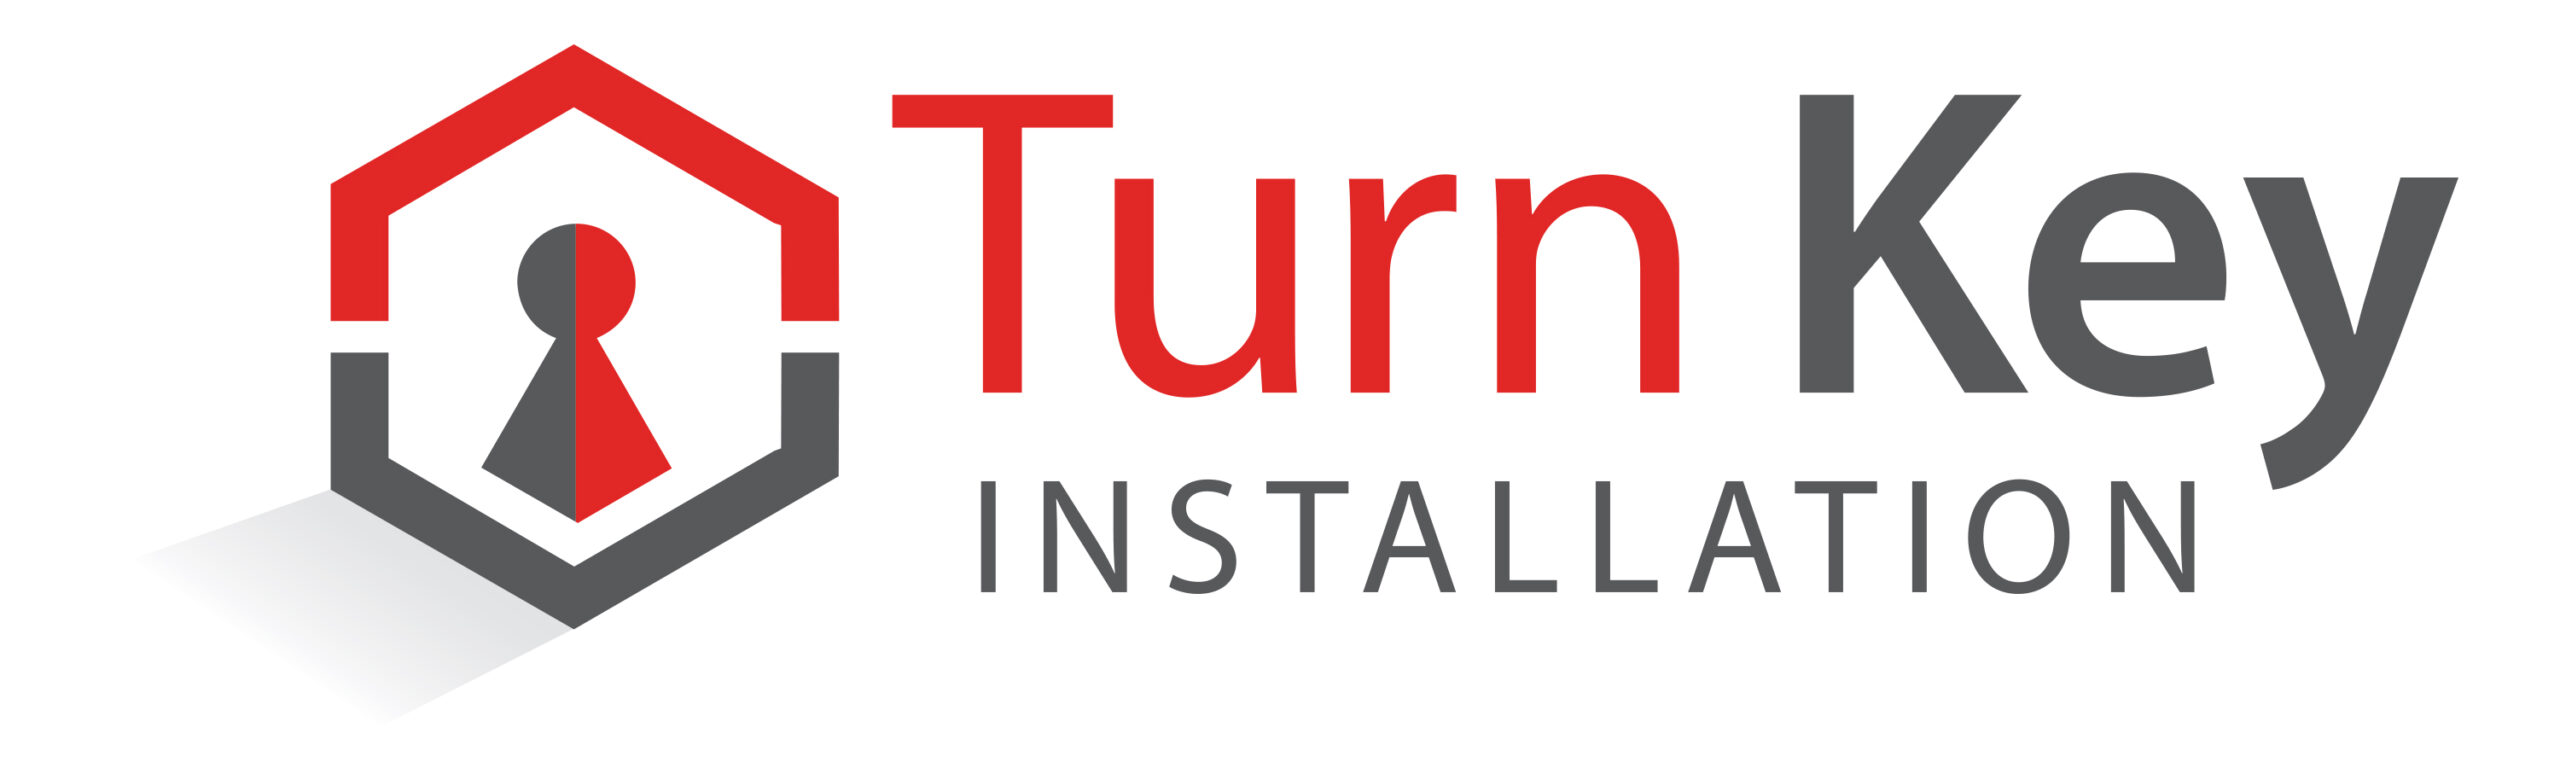 TurnKeyInstallation_logo